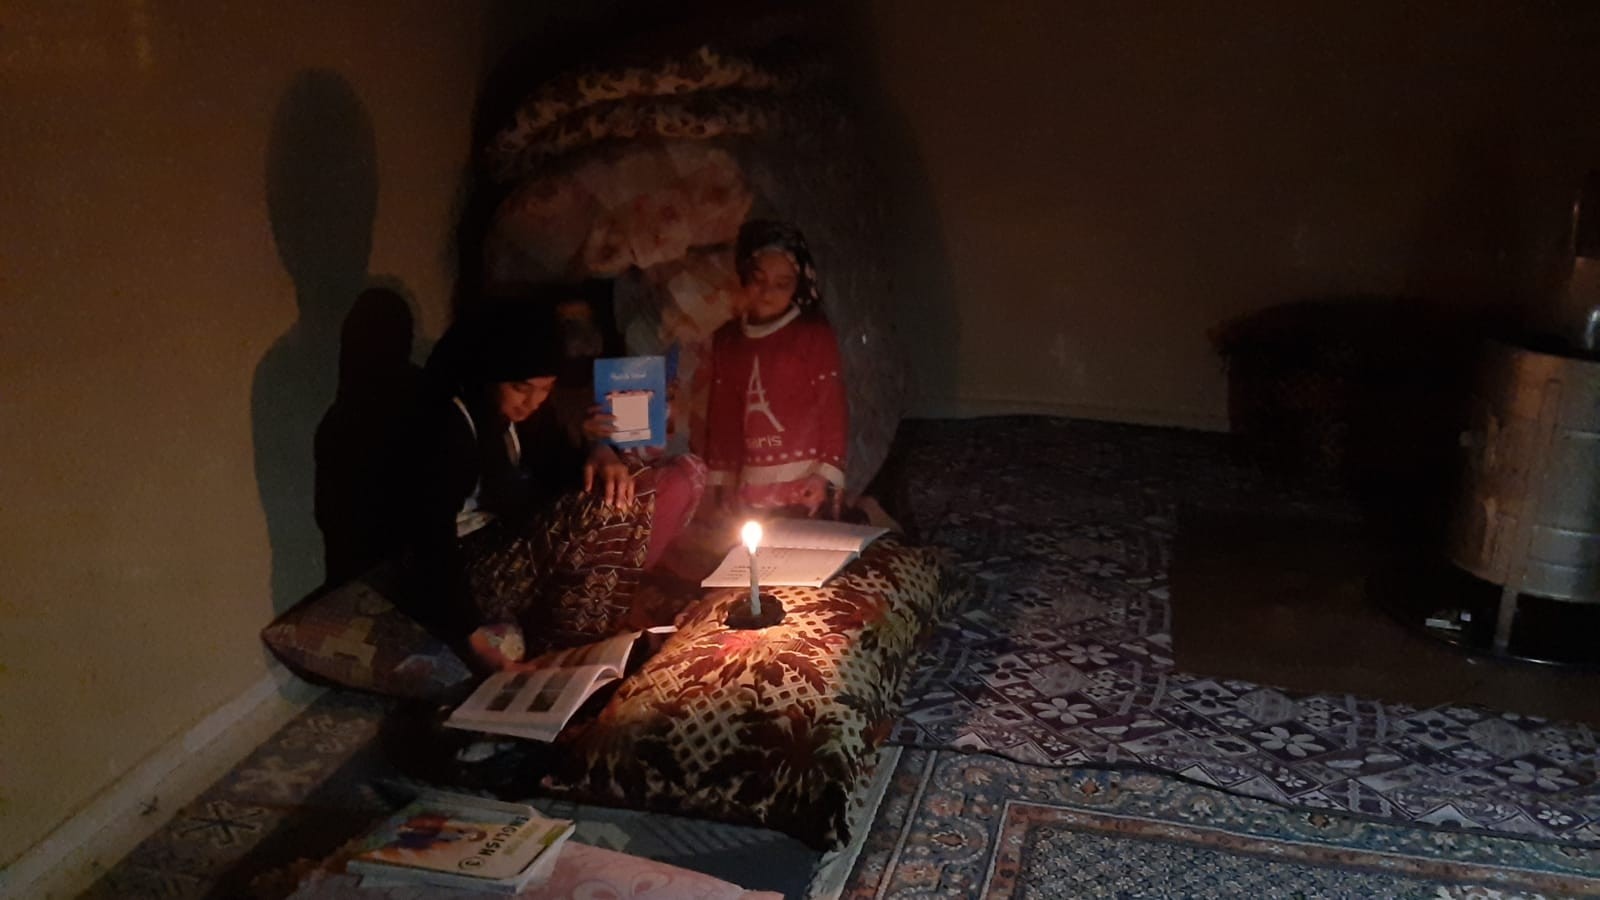 Yeşilli Belediyesinin elektriğini kestiği evde mum ışığında ders çalışan kız: Bize sahip çıkın